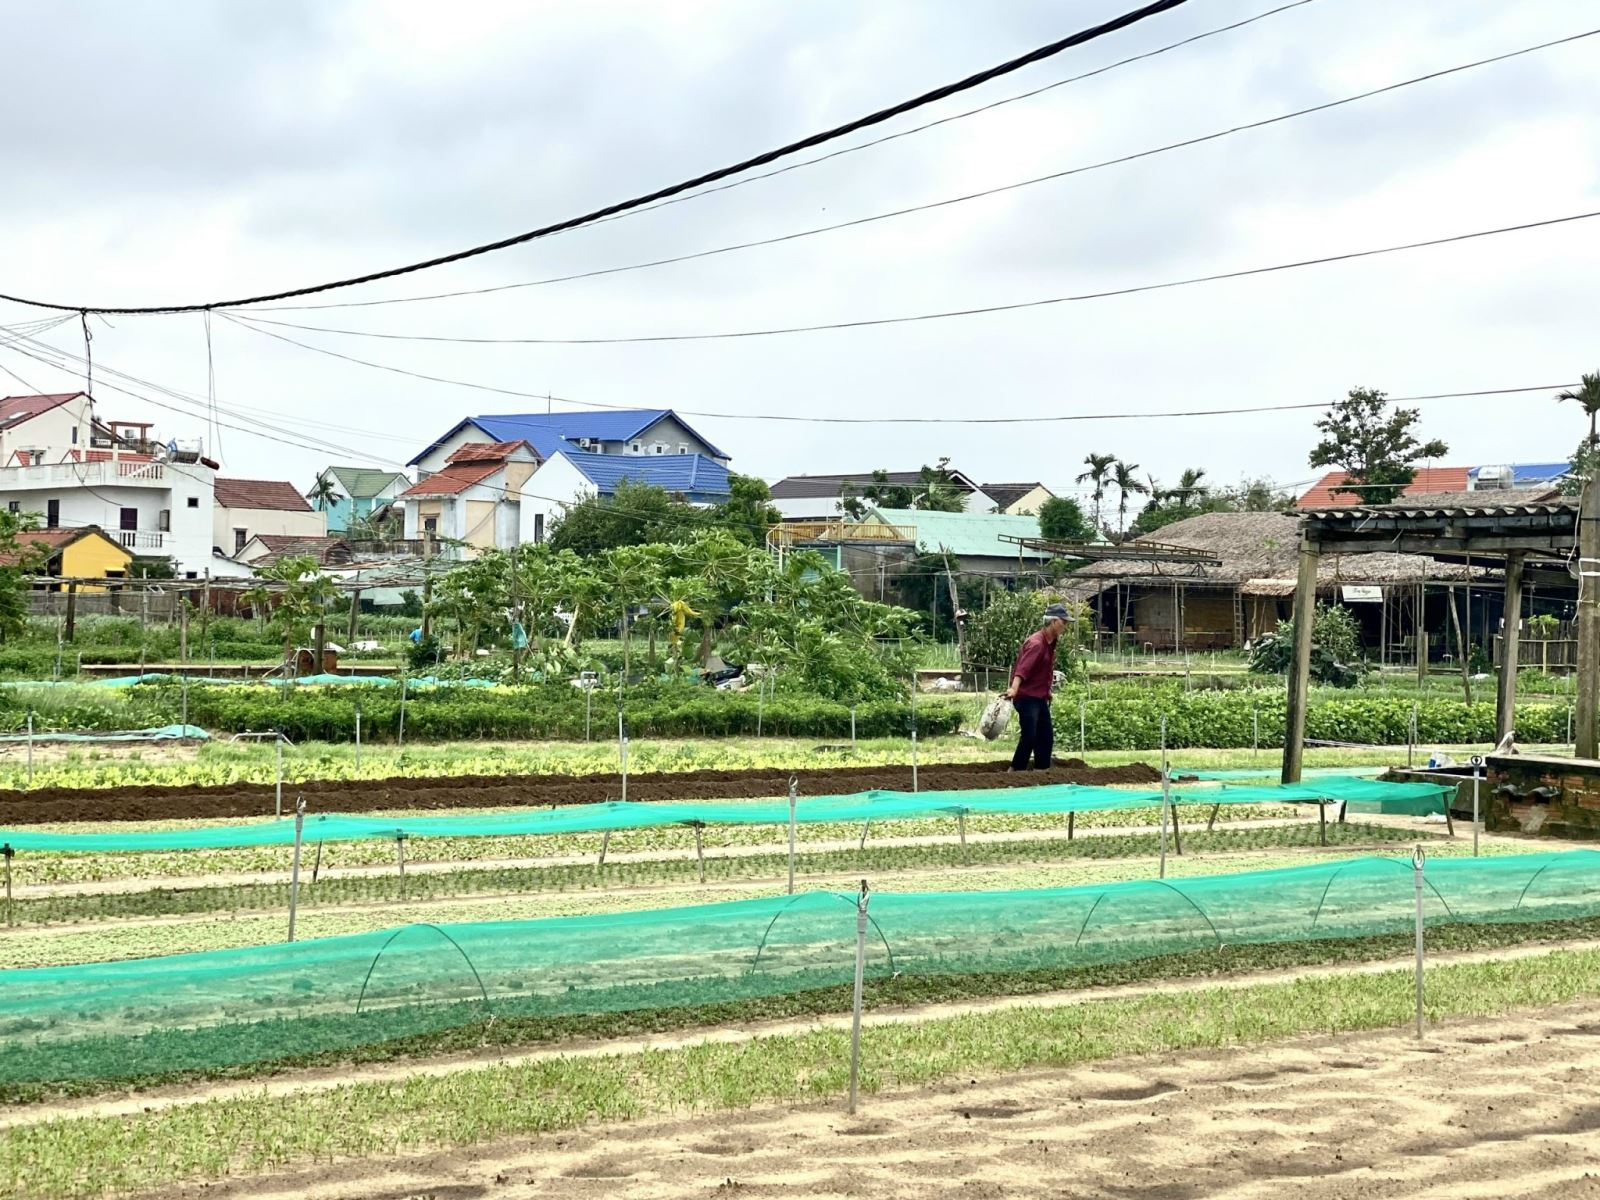 Làng rau sạch Trà Quế, điểm phát triển nông nghiệp gắn liền với du lịch tại thành phố Hội An.